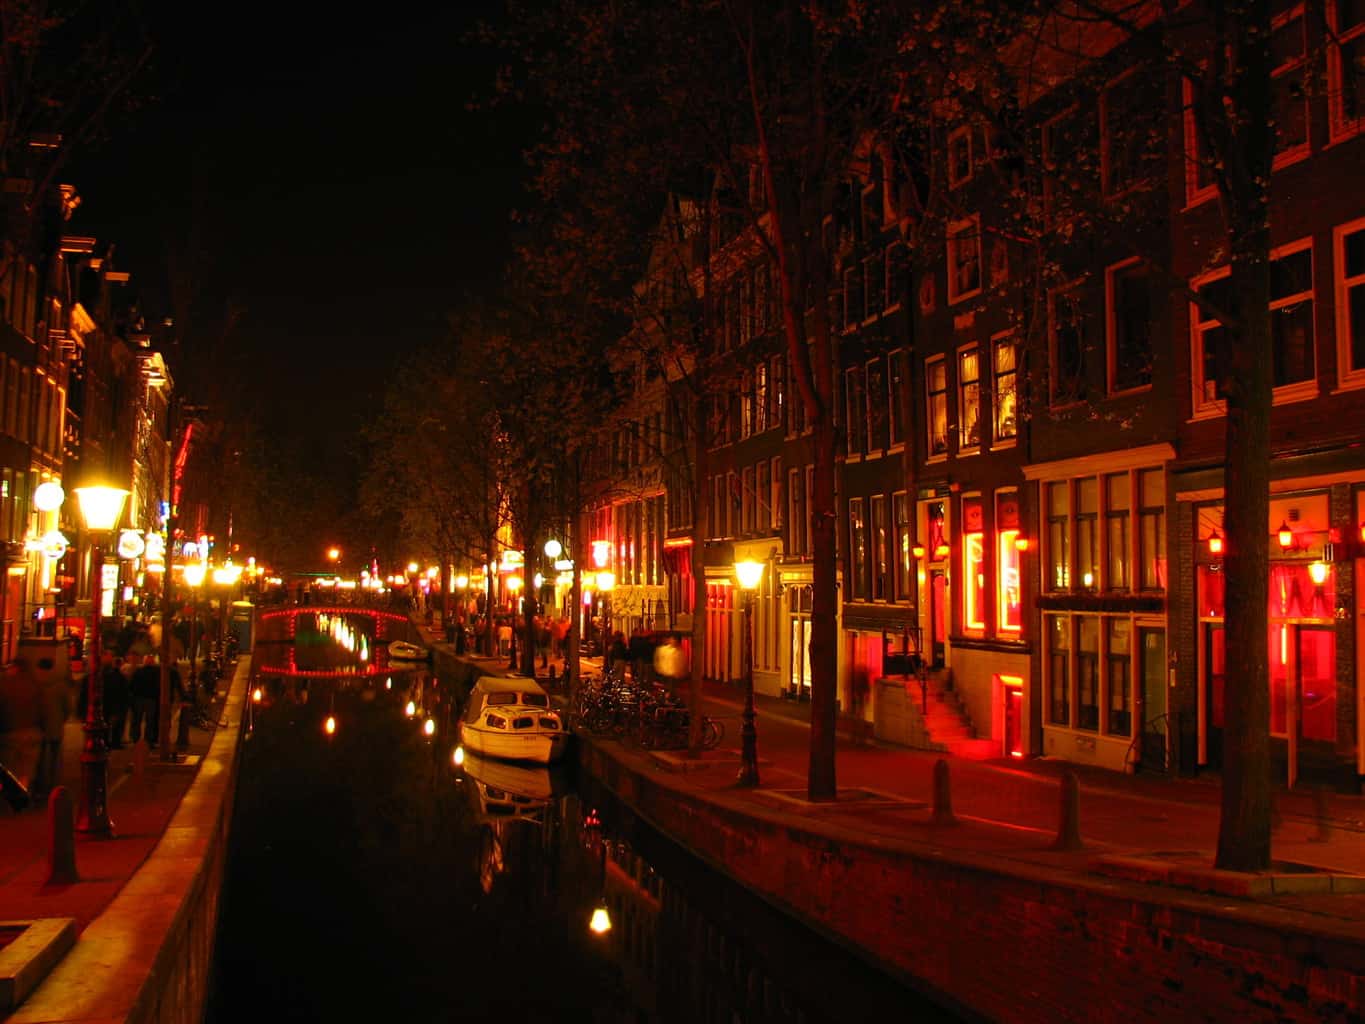 De Wallen (red light district), Amsterdam